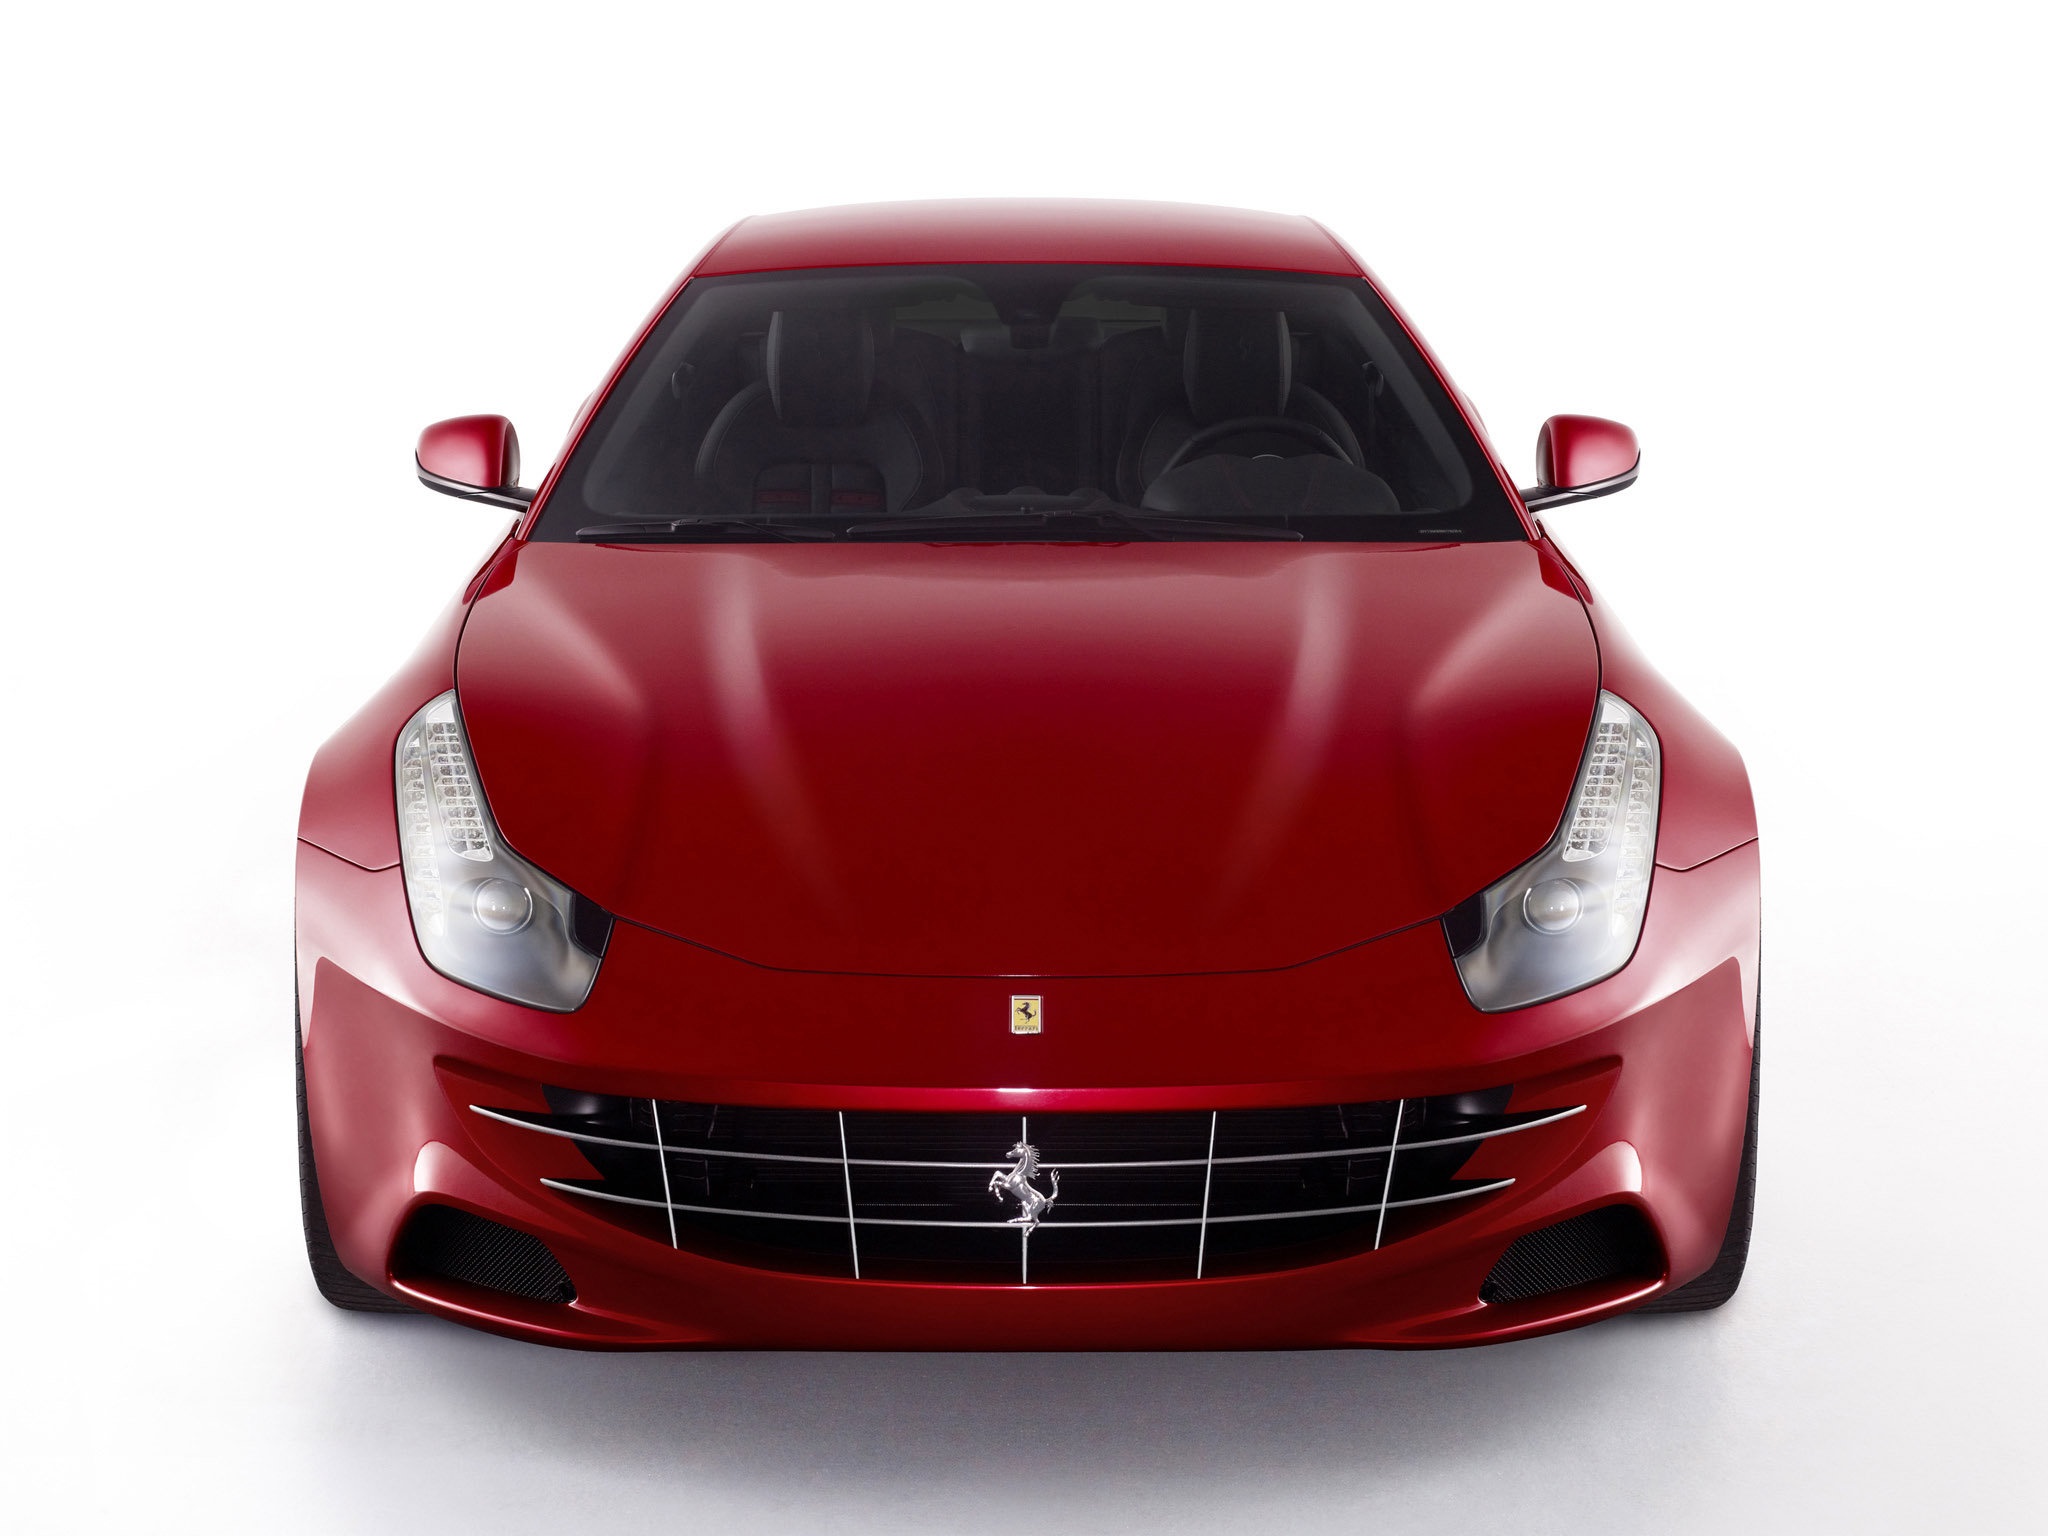 2011, Ferrari, Four, Ff, Supercar, Supercars Wallpaper